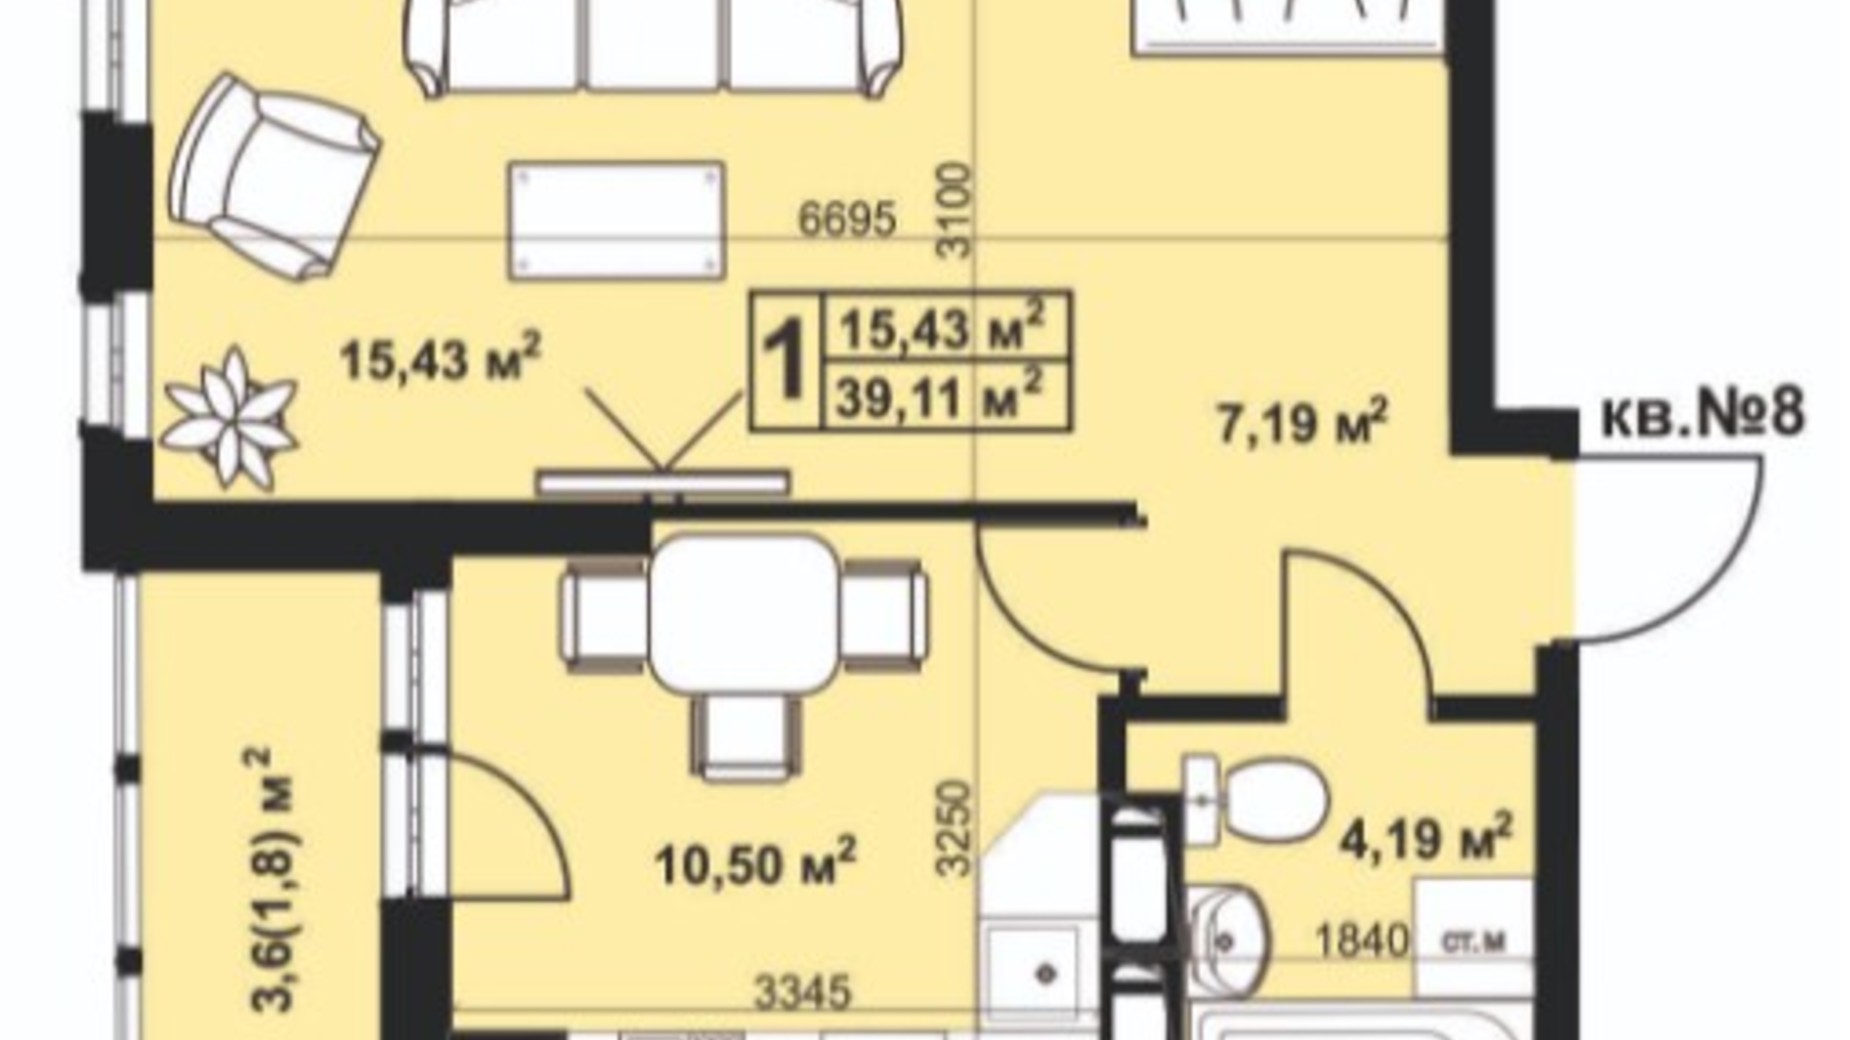 Планування 1-кімнатної квартири в ЖК Андріївський 39.11 м², фото 297247